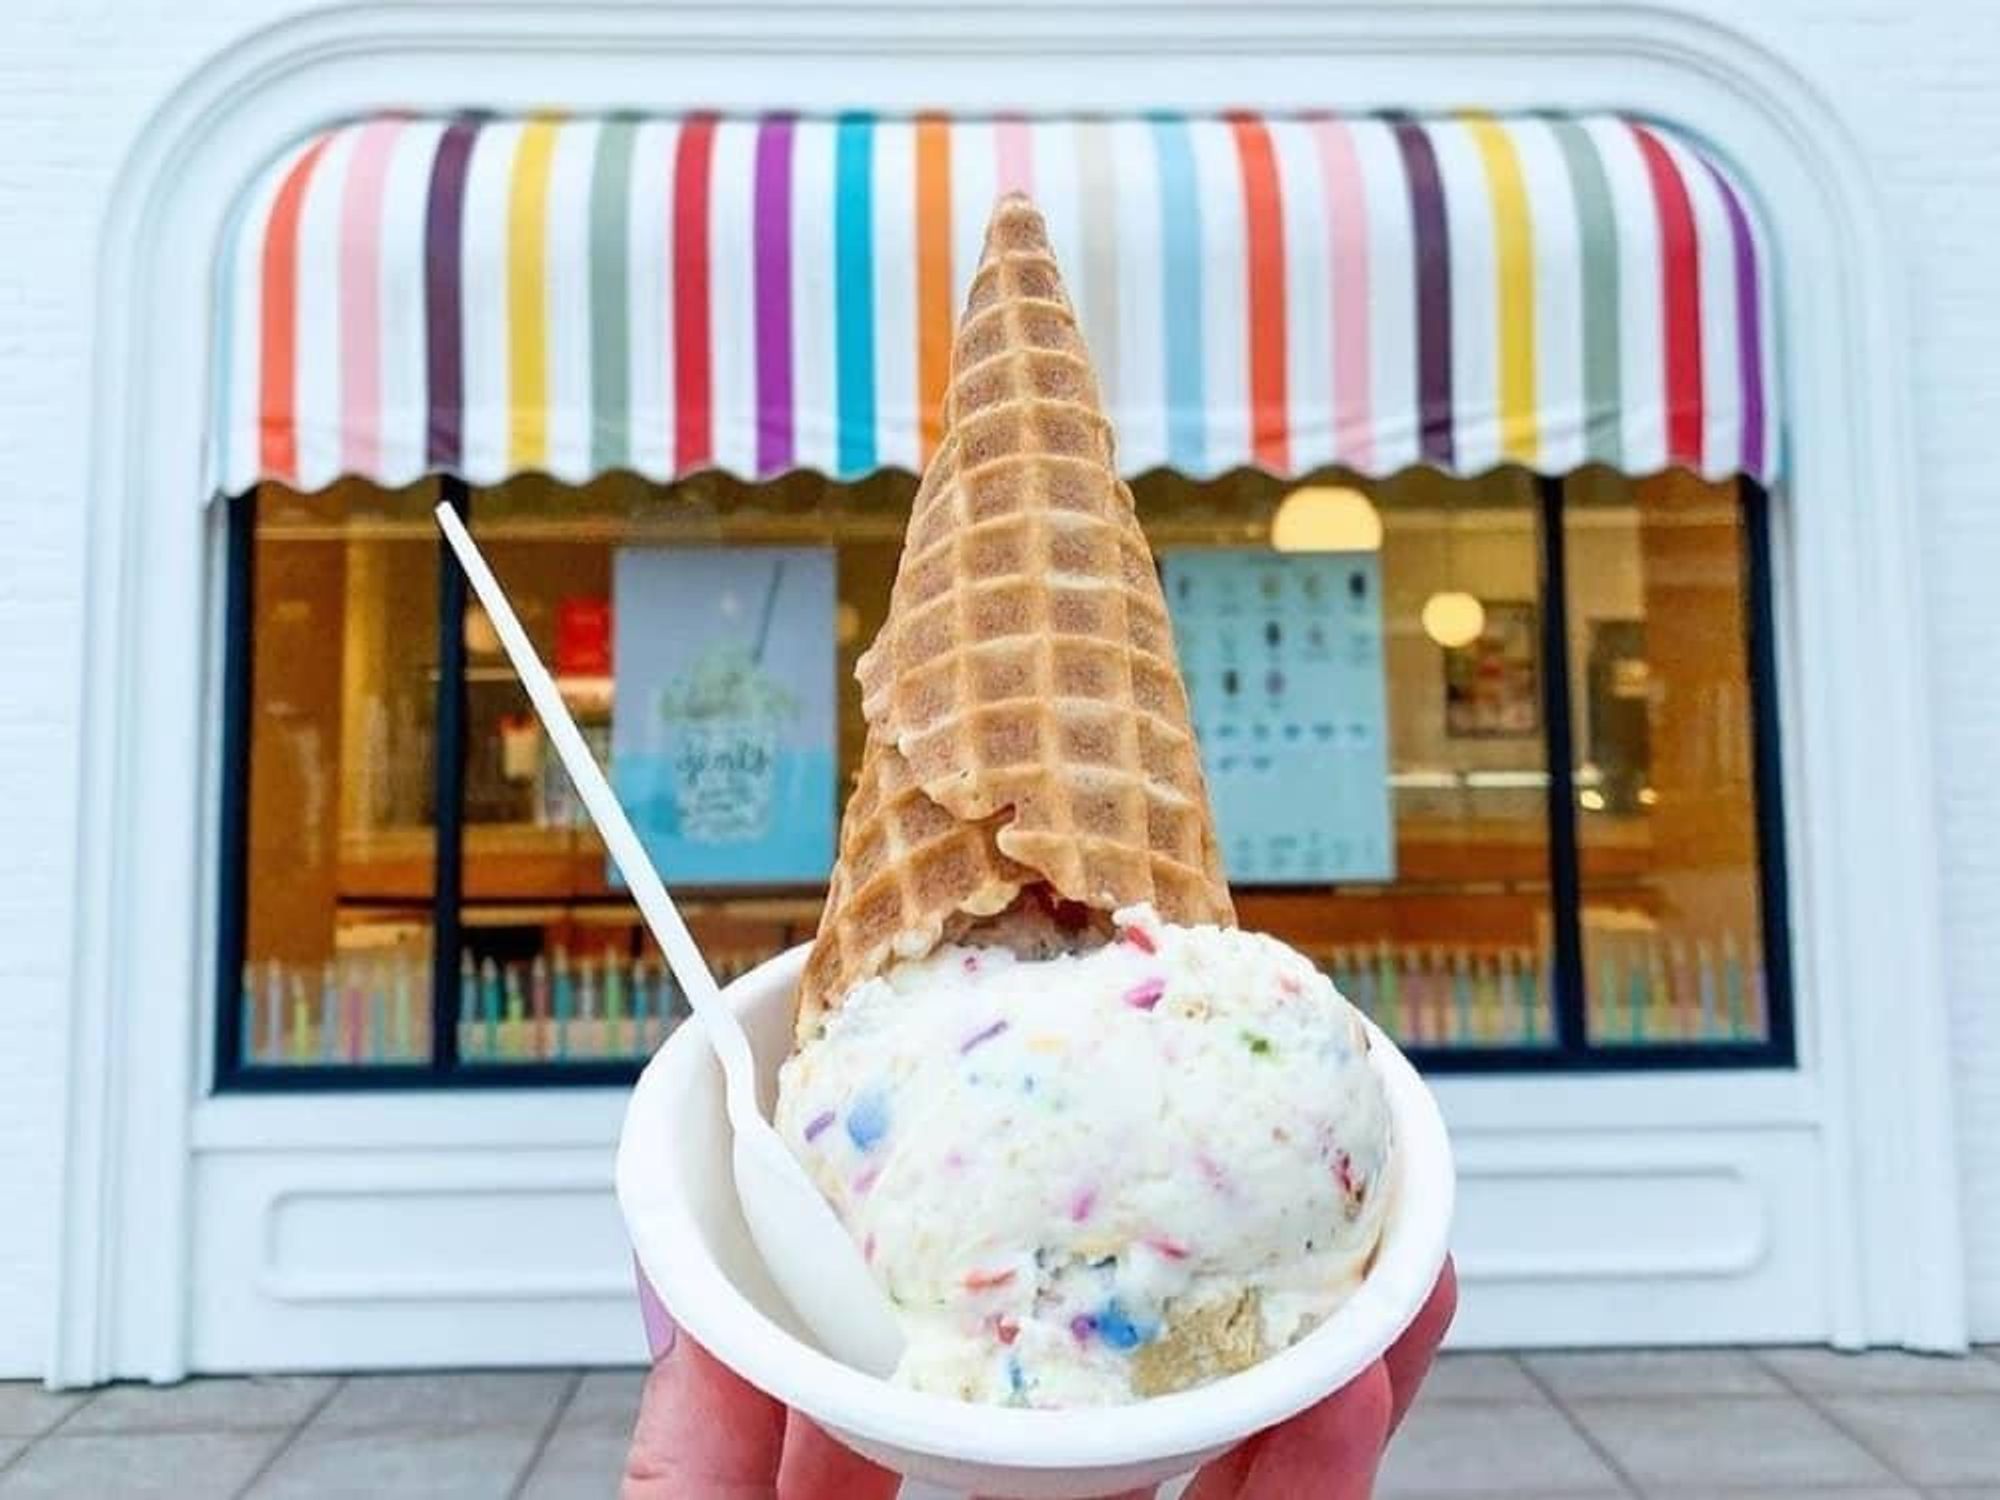 19 Jeni's Ice Cream Flavors, Ranked Worst To Best